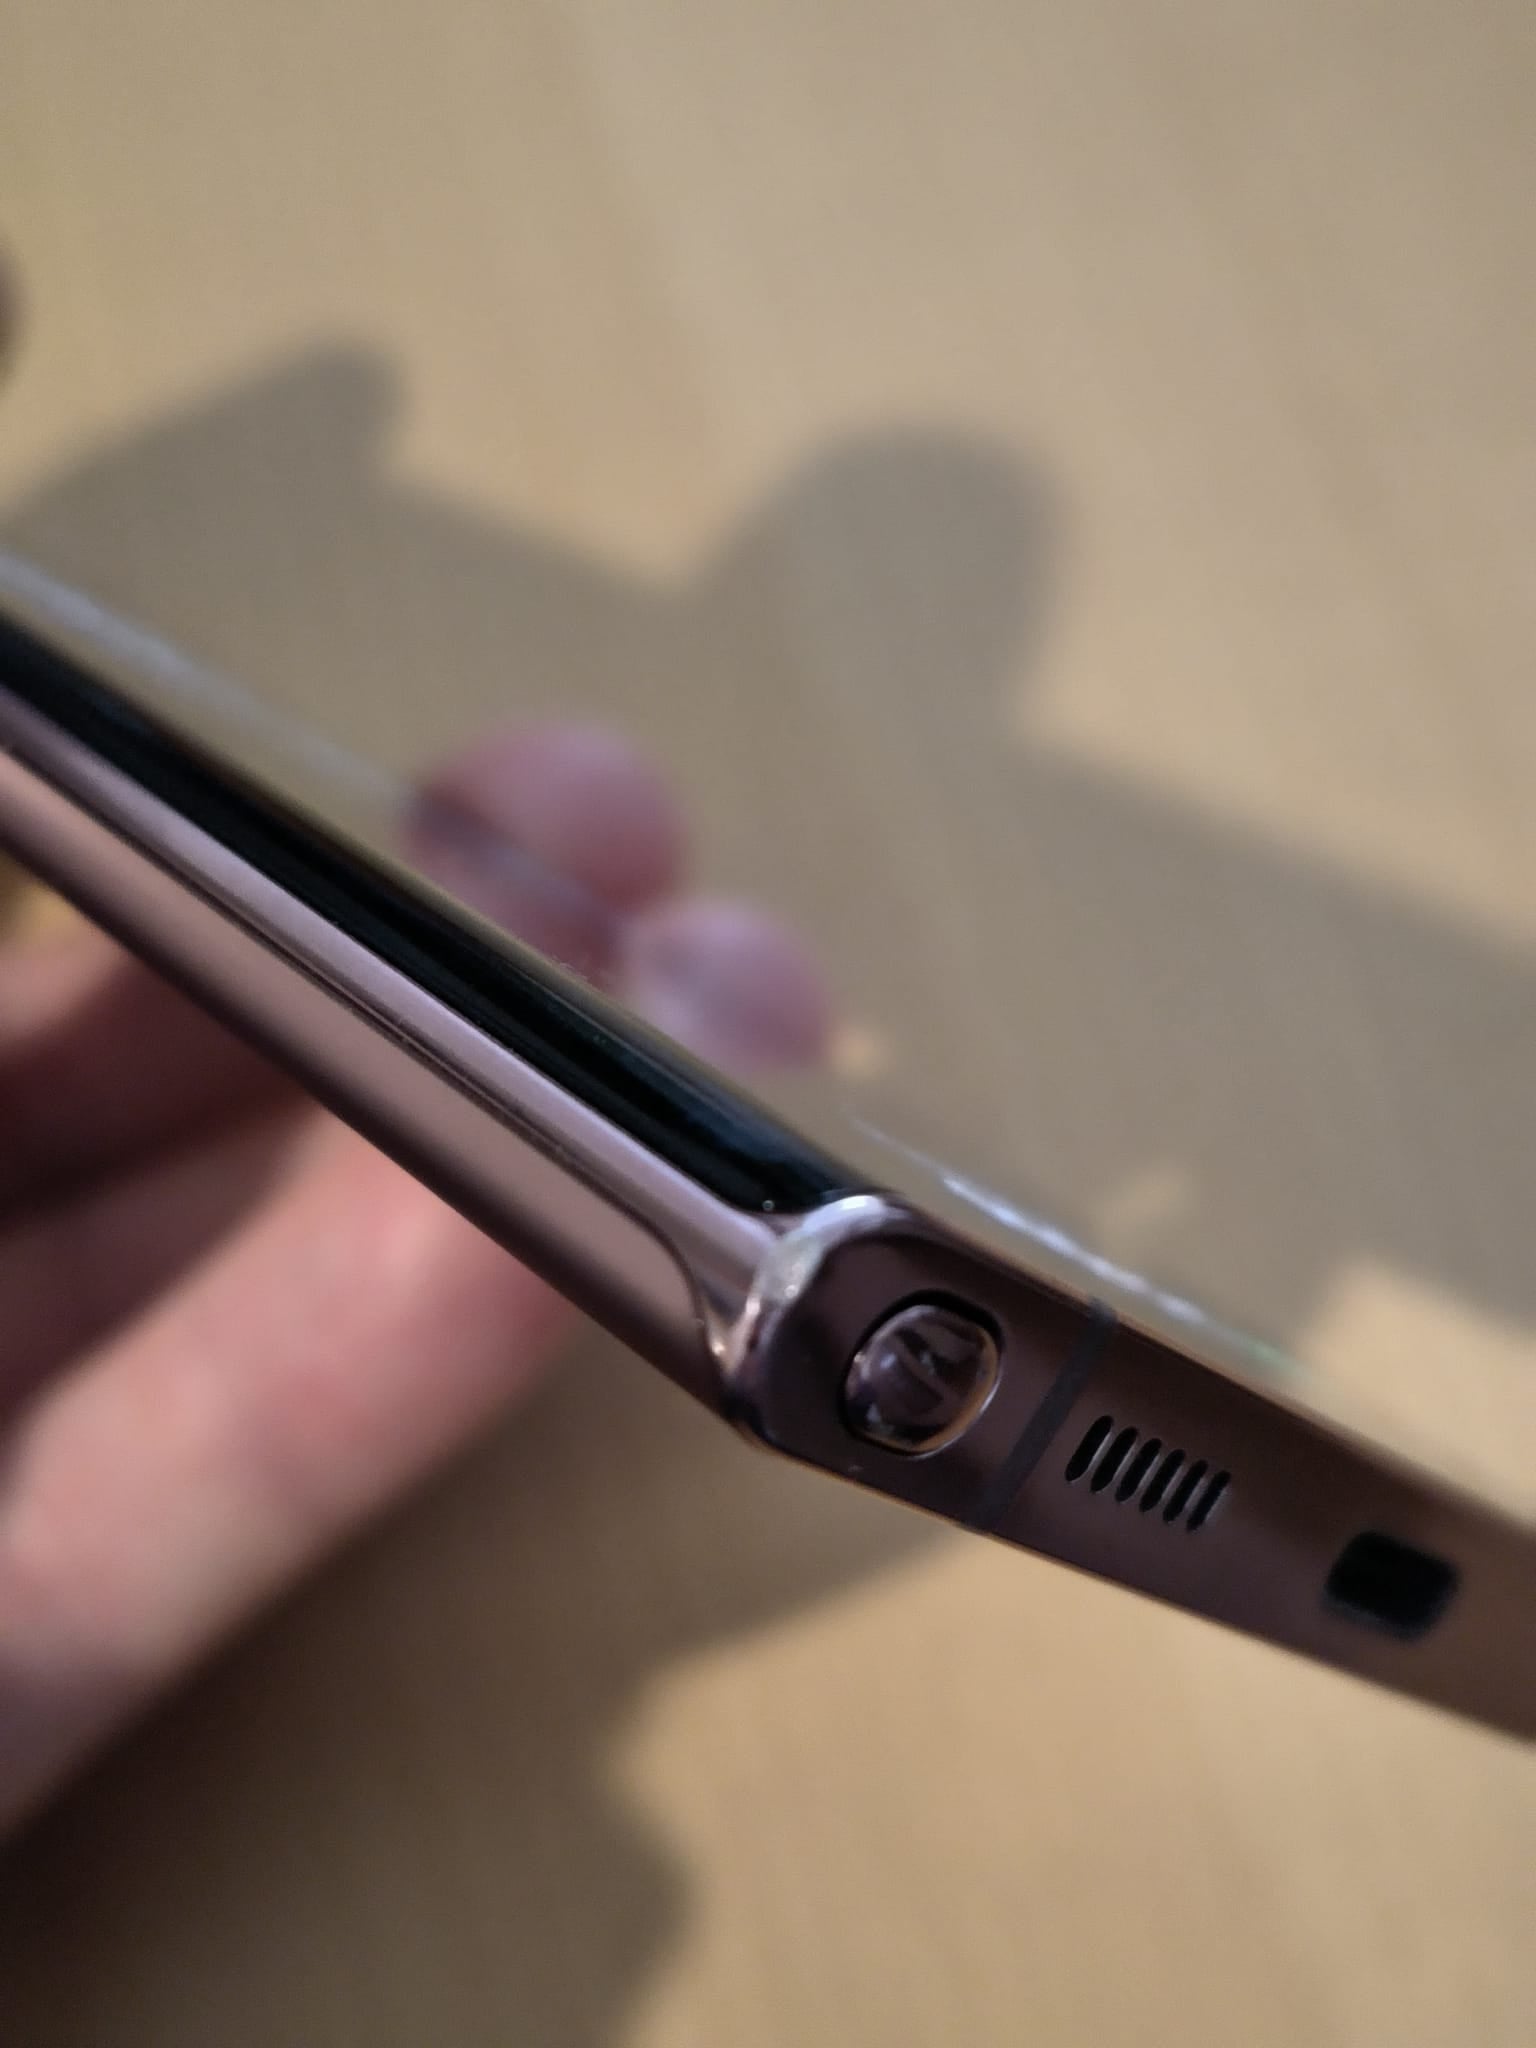 Samsung Galaxy Note20 Ultra 5G 256GB Speicher in Bronze mit Pen Android 13